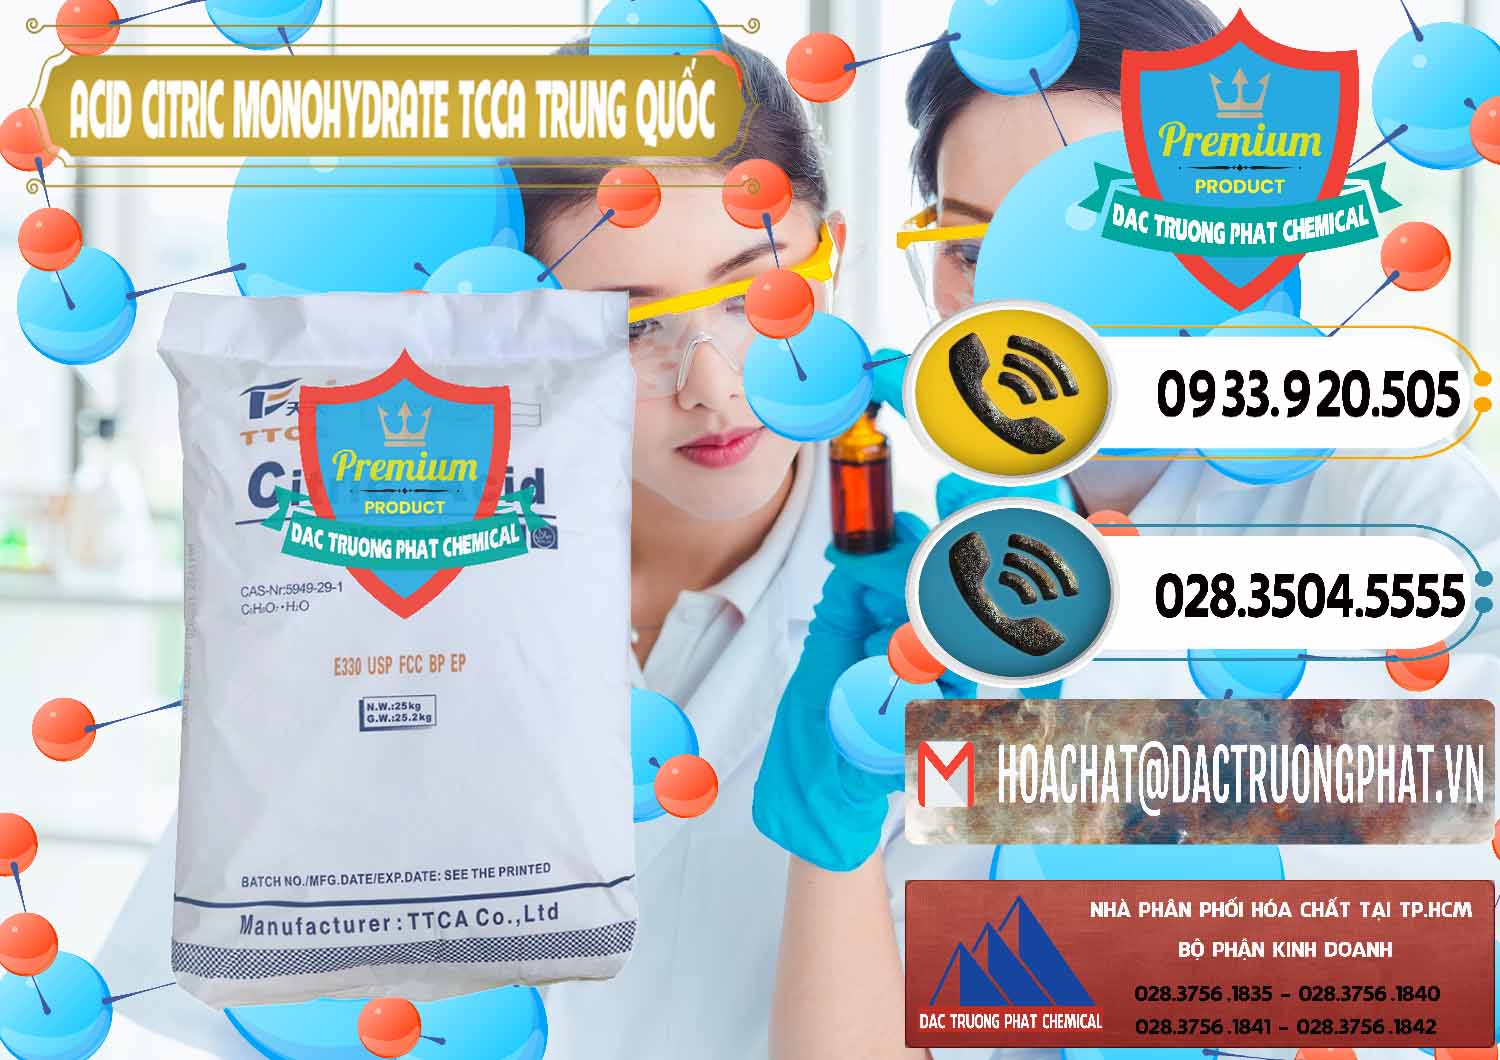 Cty chuyên phân phối - bán Acid Citric - Axit Citric Monohydrate TCCA Trung Quốc China - 0441 - Công ty cung cấp & phân phối hóa chất tại TP.HCM - hoachatdetnhuom.vn